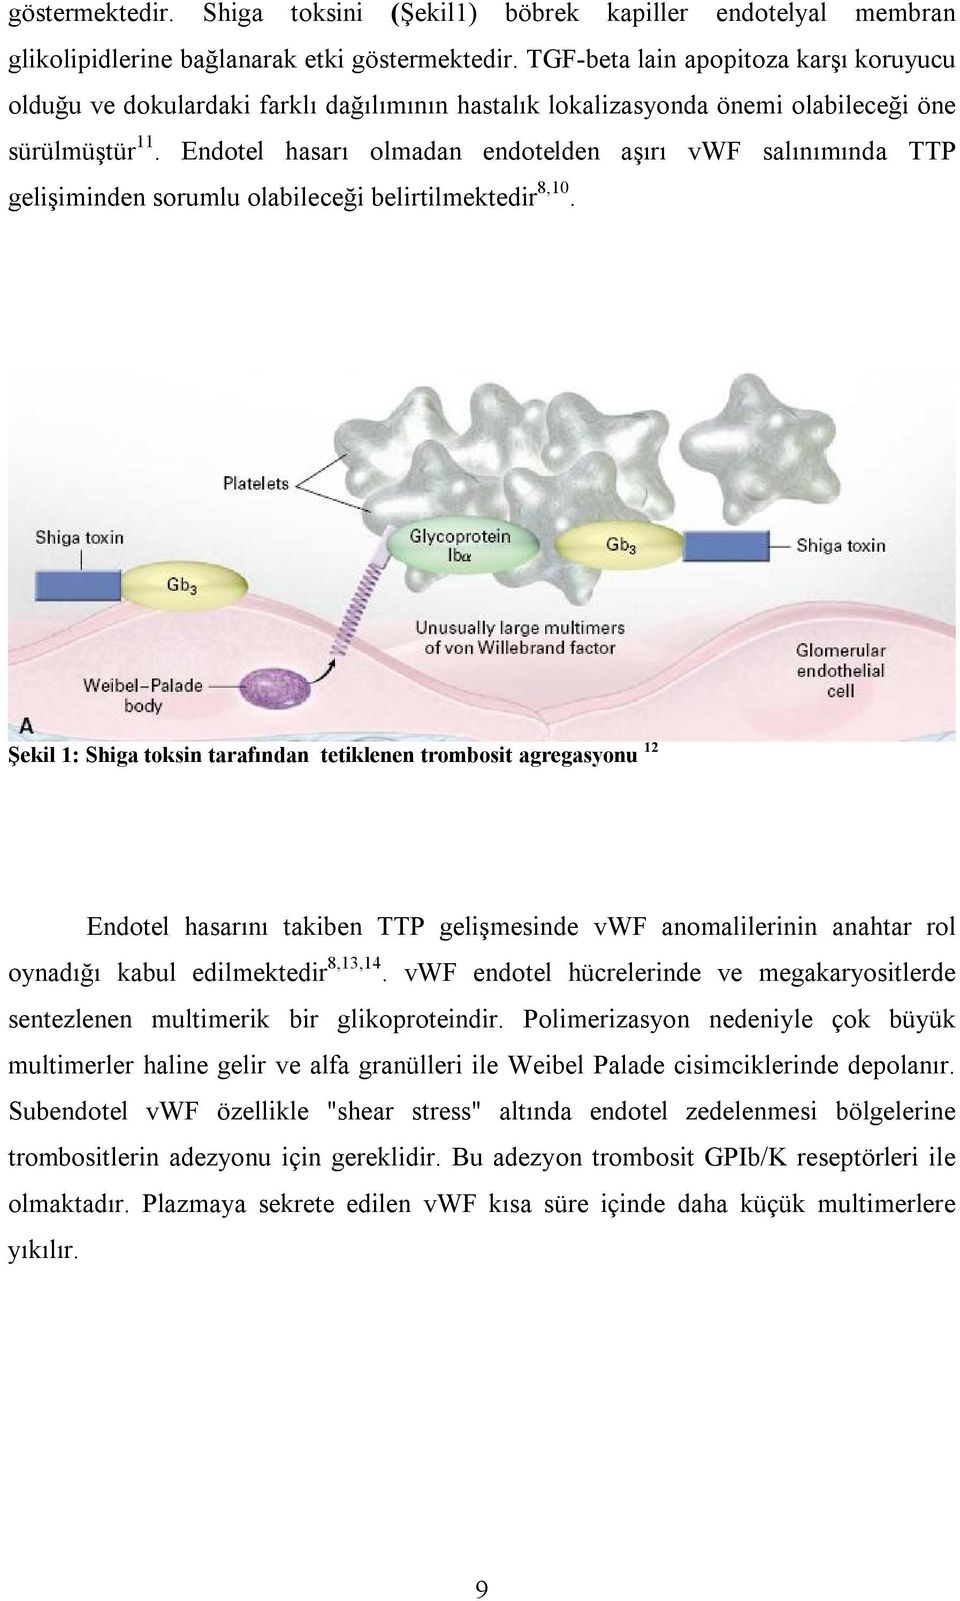 Endotel hasarı olmadan endotelden aşırı vwf salınımında TTP gelişiminden sorumlu olabileceği belirtilmektedir 8,10.